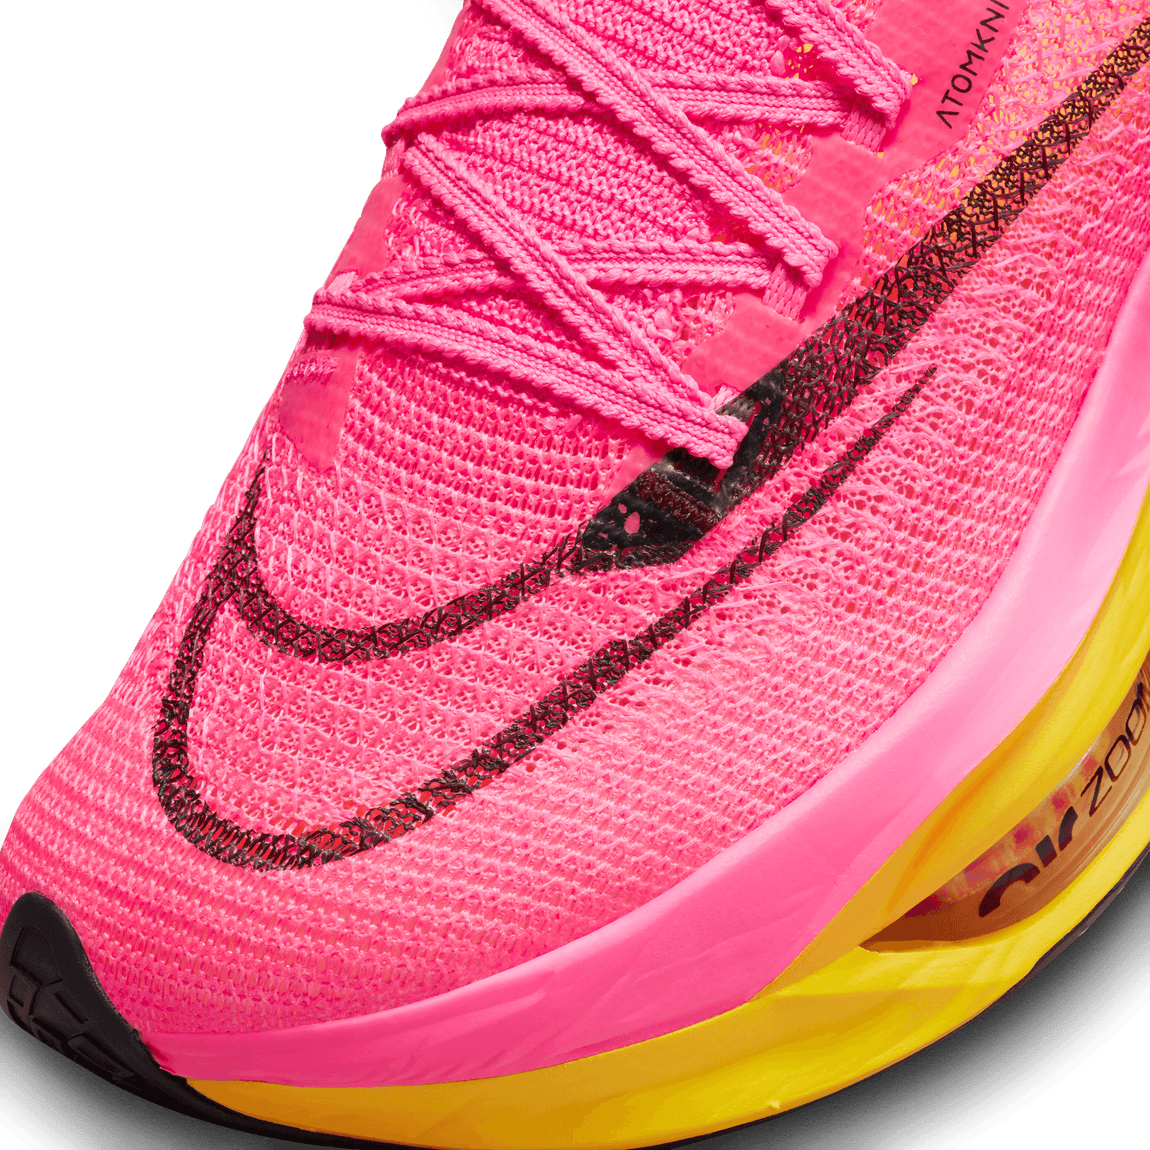 Women's Nike Air Zoom Alphafly Next %2 (Hyperpink/Black-Laser Orange) - Women's Nike Air Zoom Alphafly Next %2 (Hyperpink/Black-Laser Orange) - 